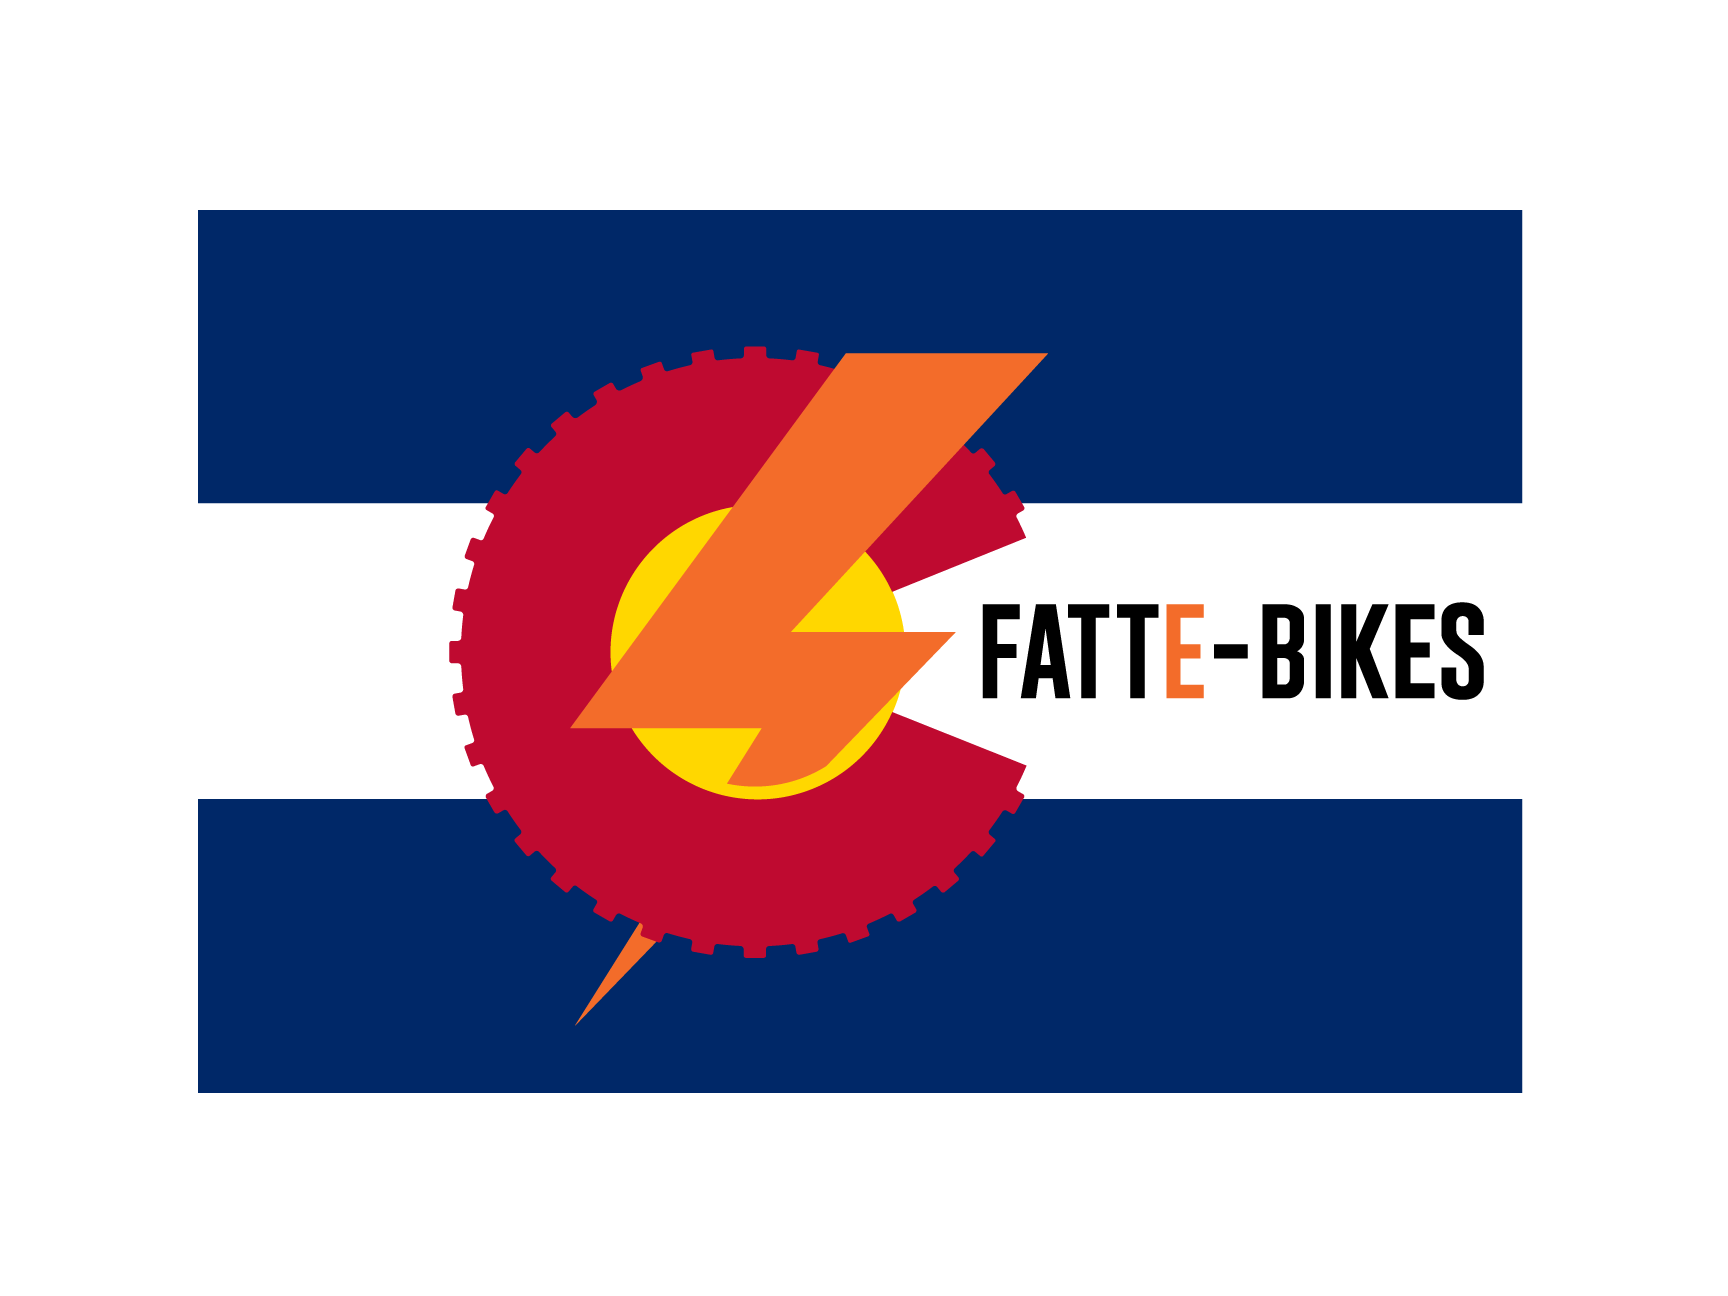 fat tire electric bikes in Colorado. FattE Bikes on Colorado flag.